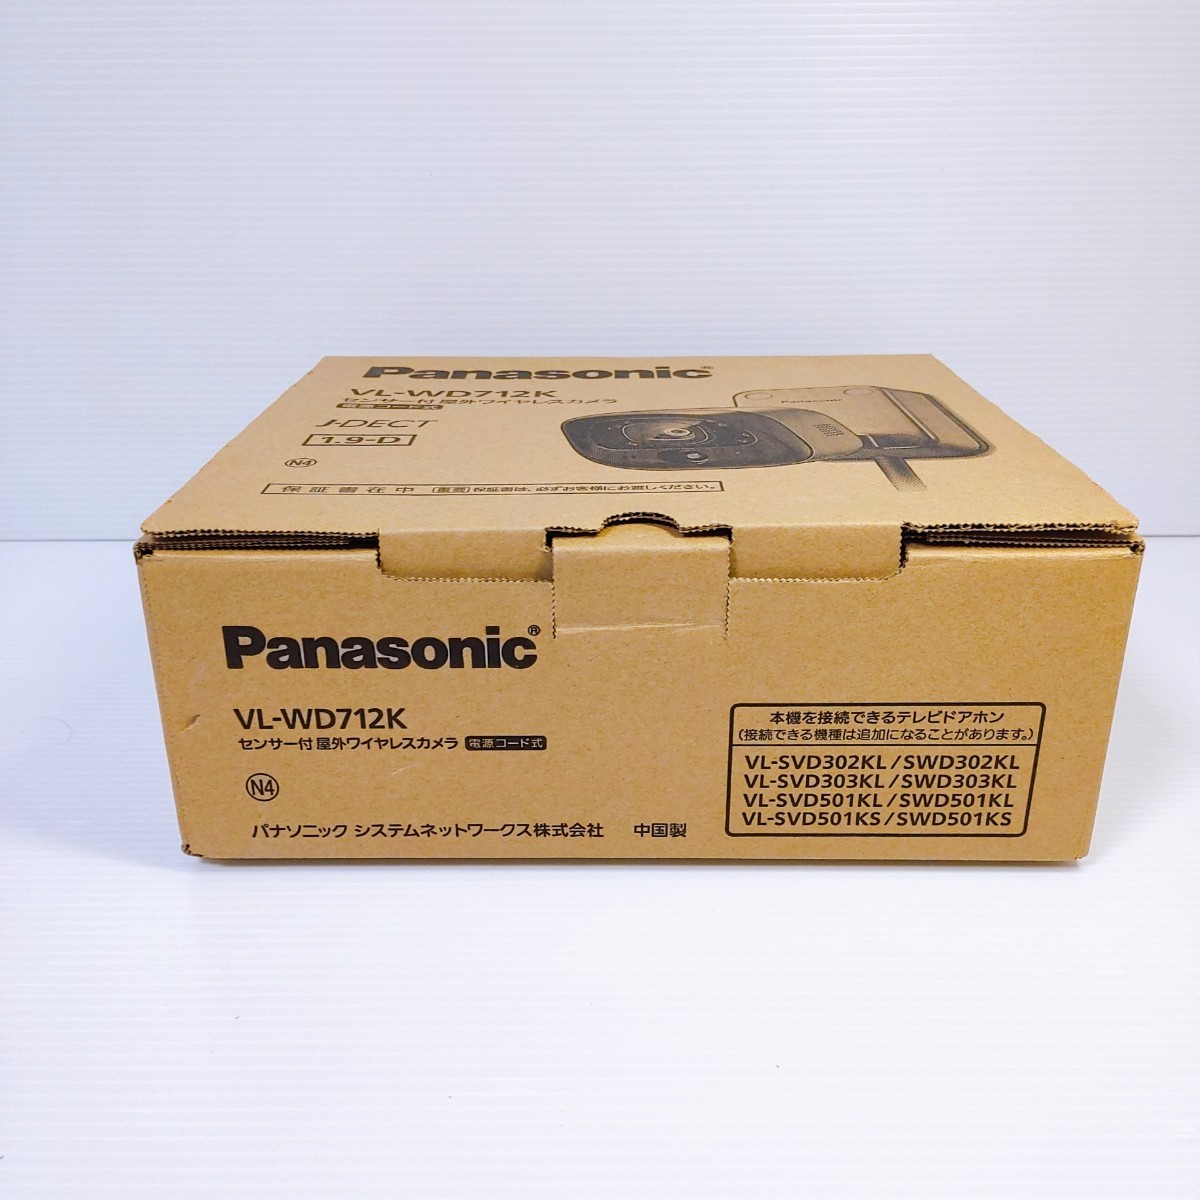 Panasonic VL-WD712K 屋外ワイヤレスカメラ_画像3